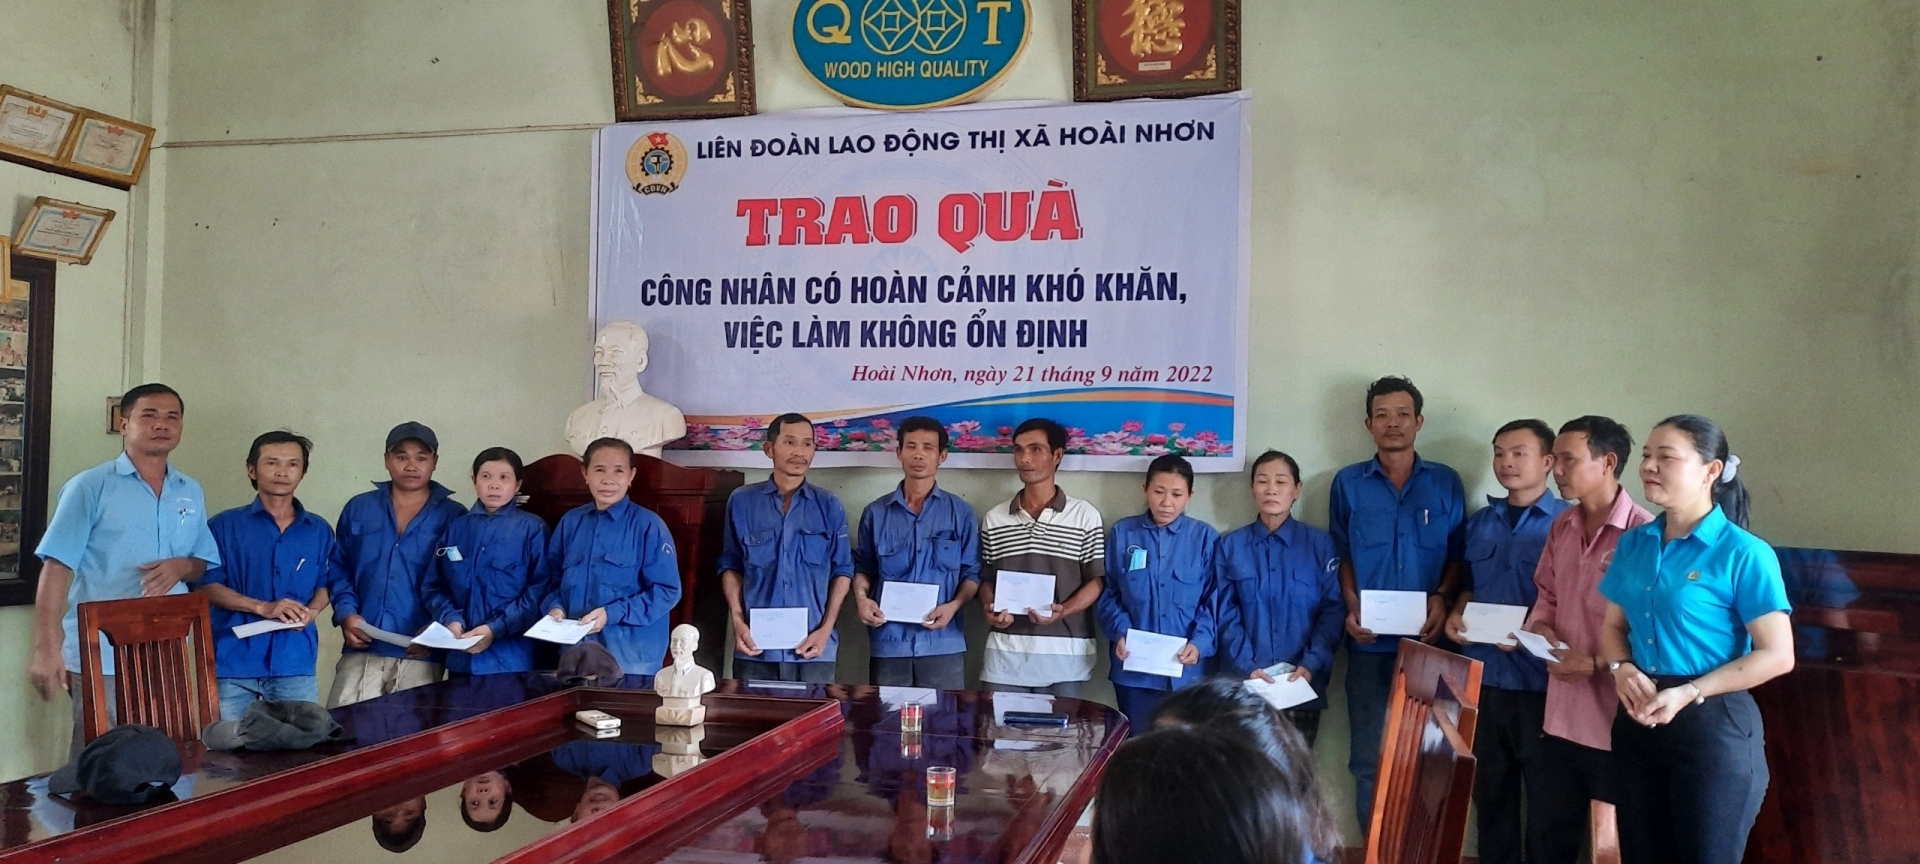 LĐLĐ Thị xã Hoài Nhơn hỗ trợ xây nhà  “Mái ấm Công đoàn” và trao 20 suất quà cho CNLĐ